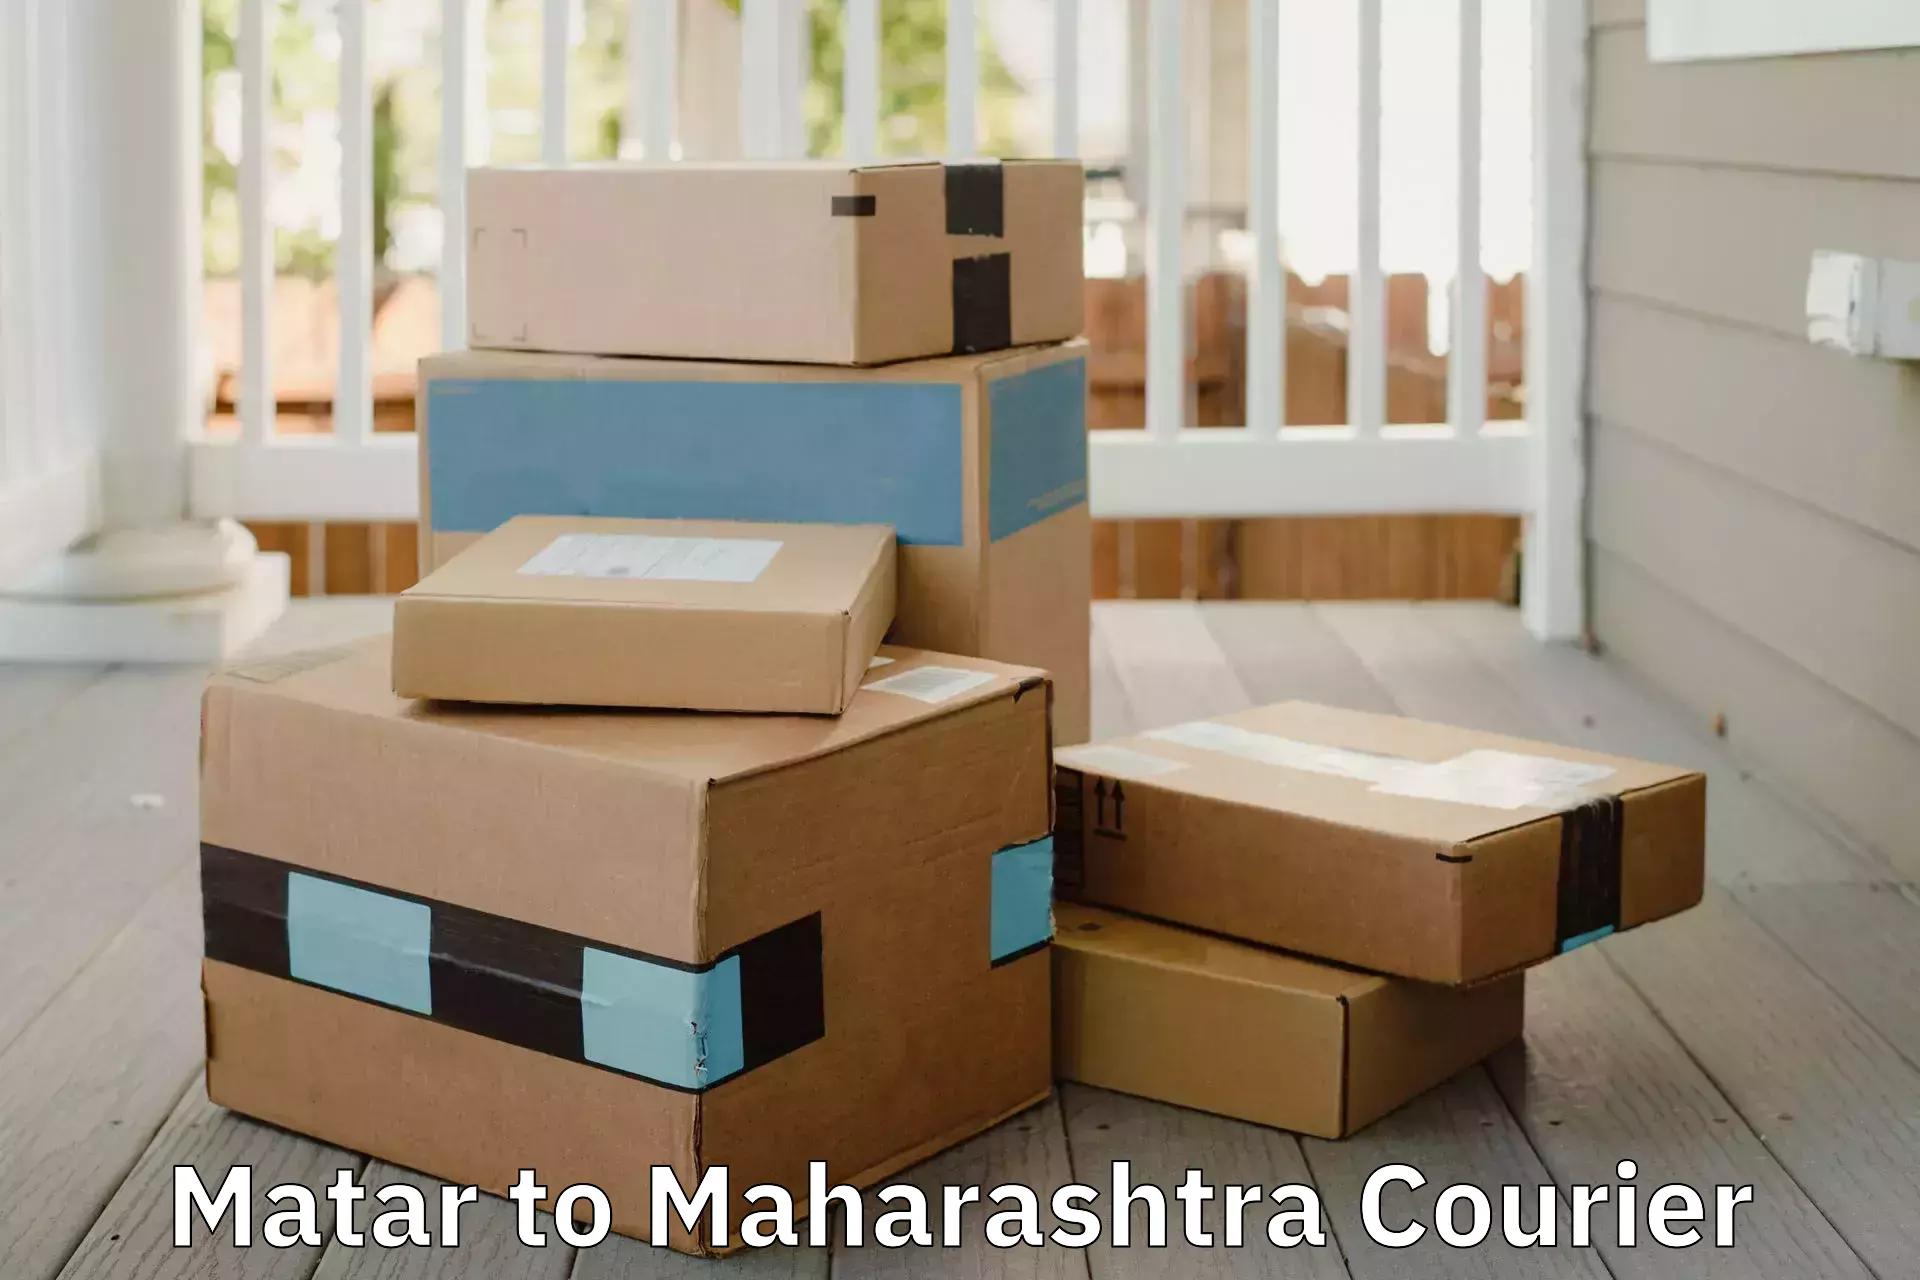 Home moving specialists Matar to Maharashtra